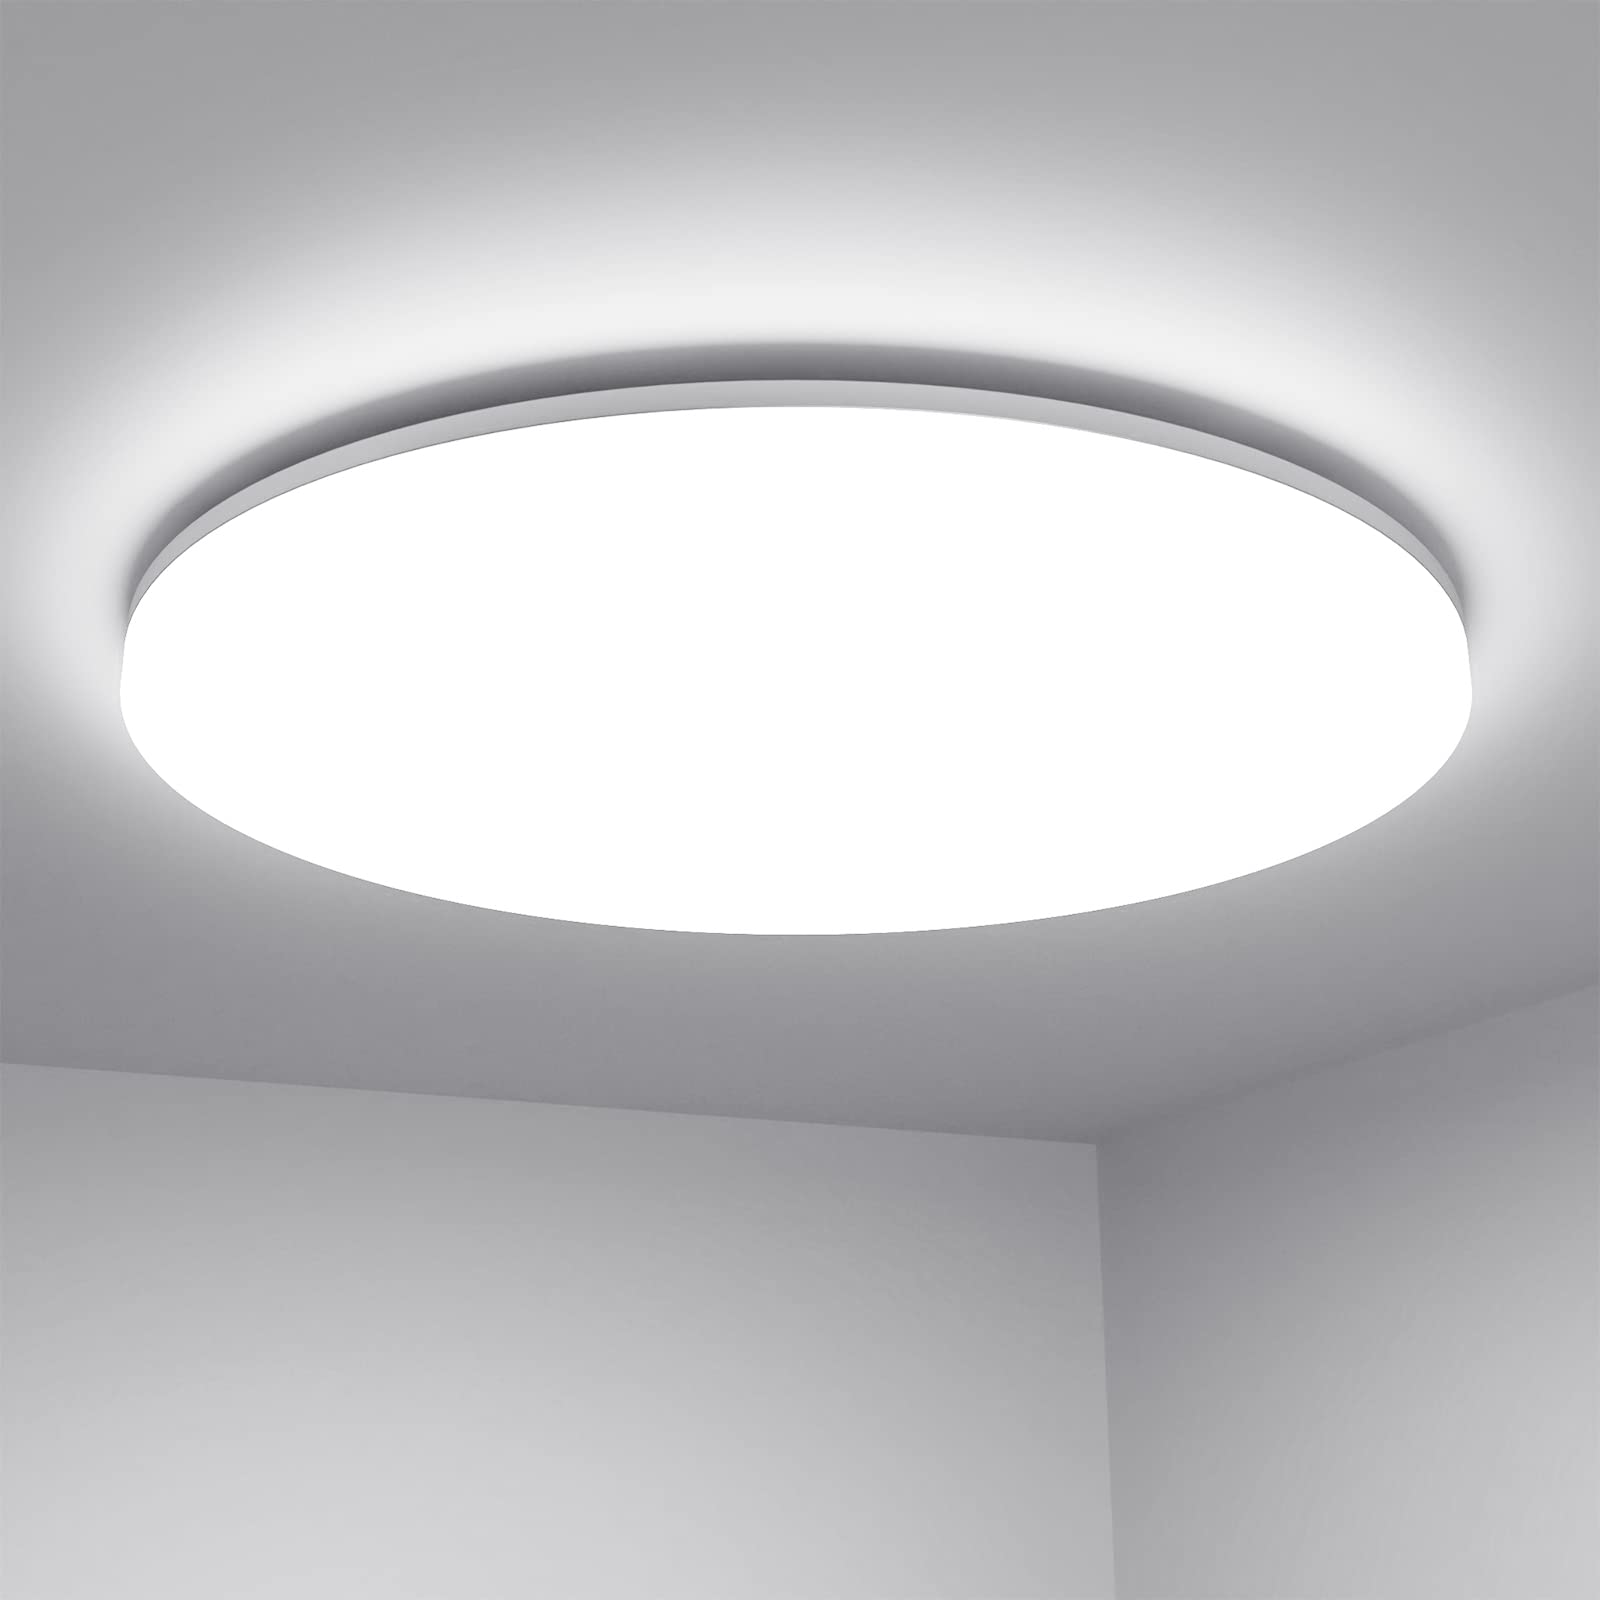 LE 24W LED Deckenlampe Ø28cm, IP54 Wasserfest Badlampe, 5000K LED Deckenleuchte, 2400lm Lampen ideal für Badezimmer Balkon Flur Küche Wohnzimmer Abstellraum, Kaltweiß Badezimmerleuchte